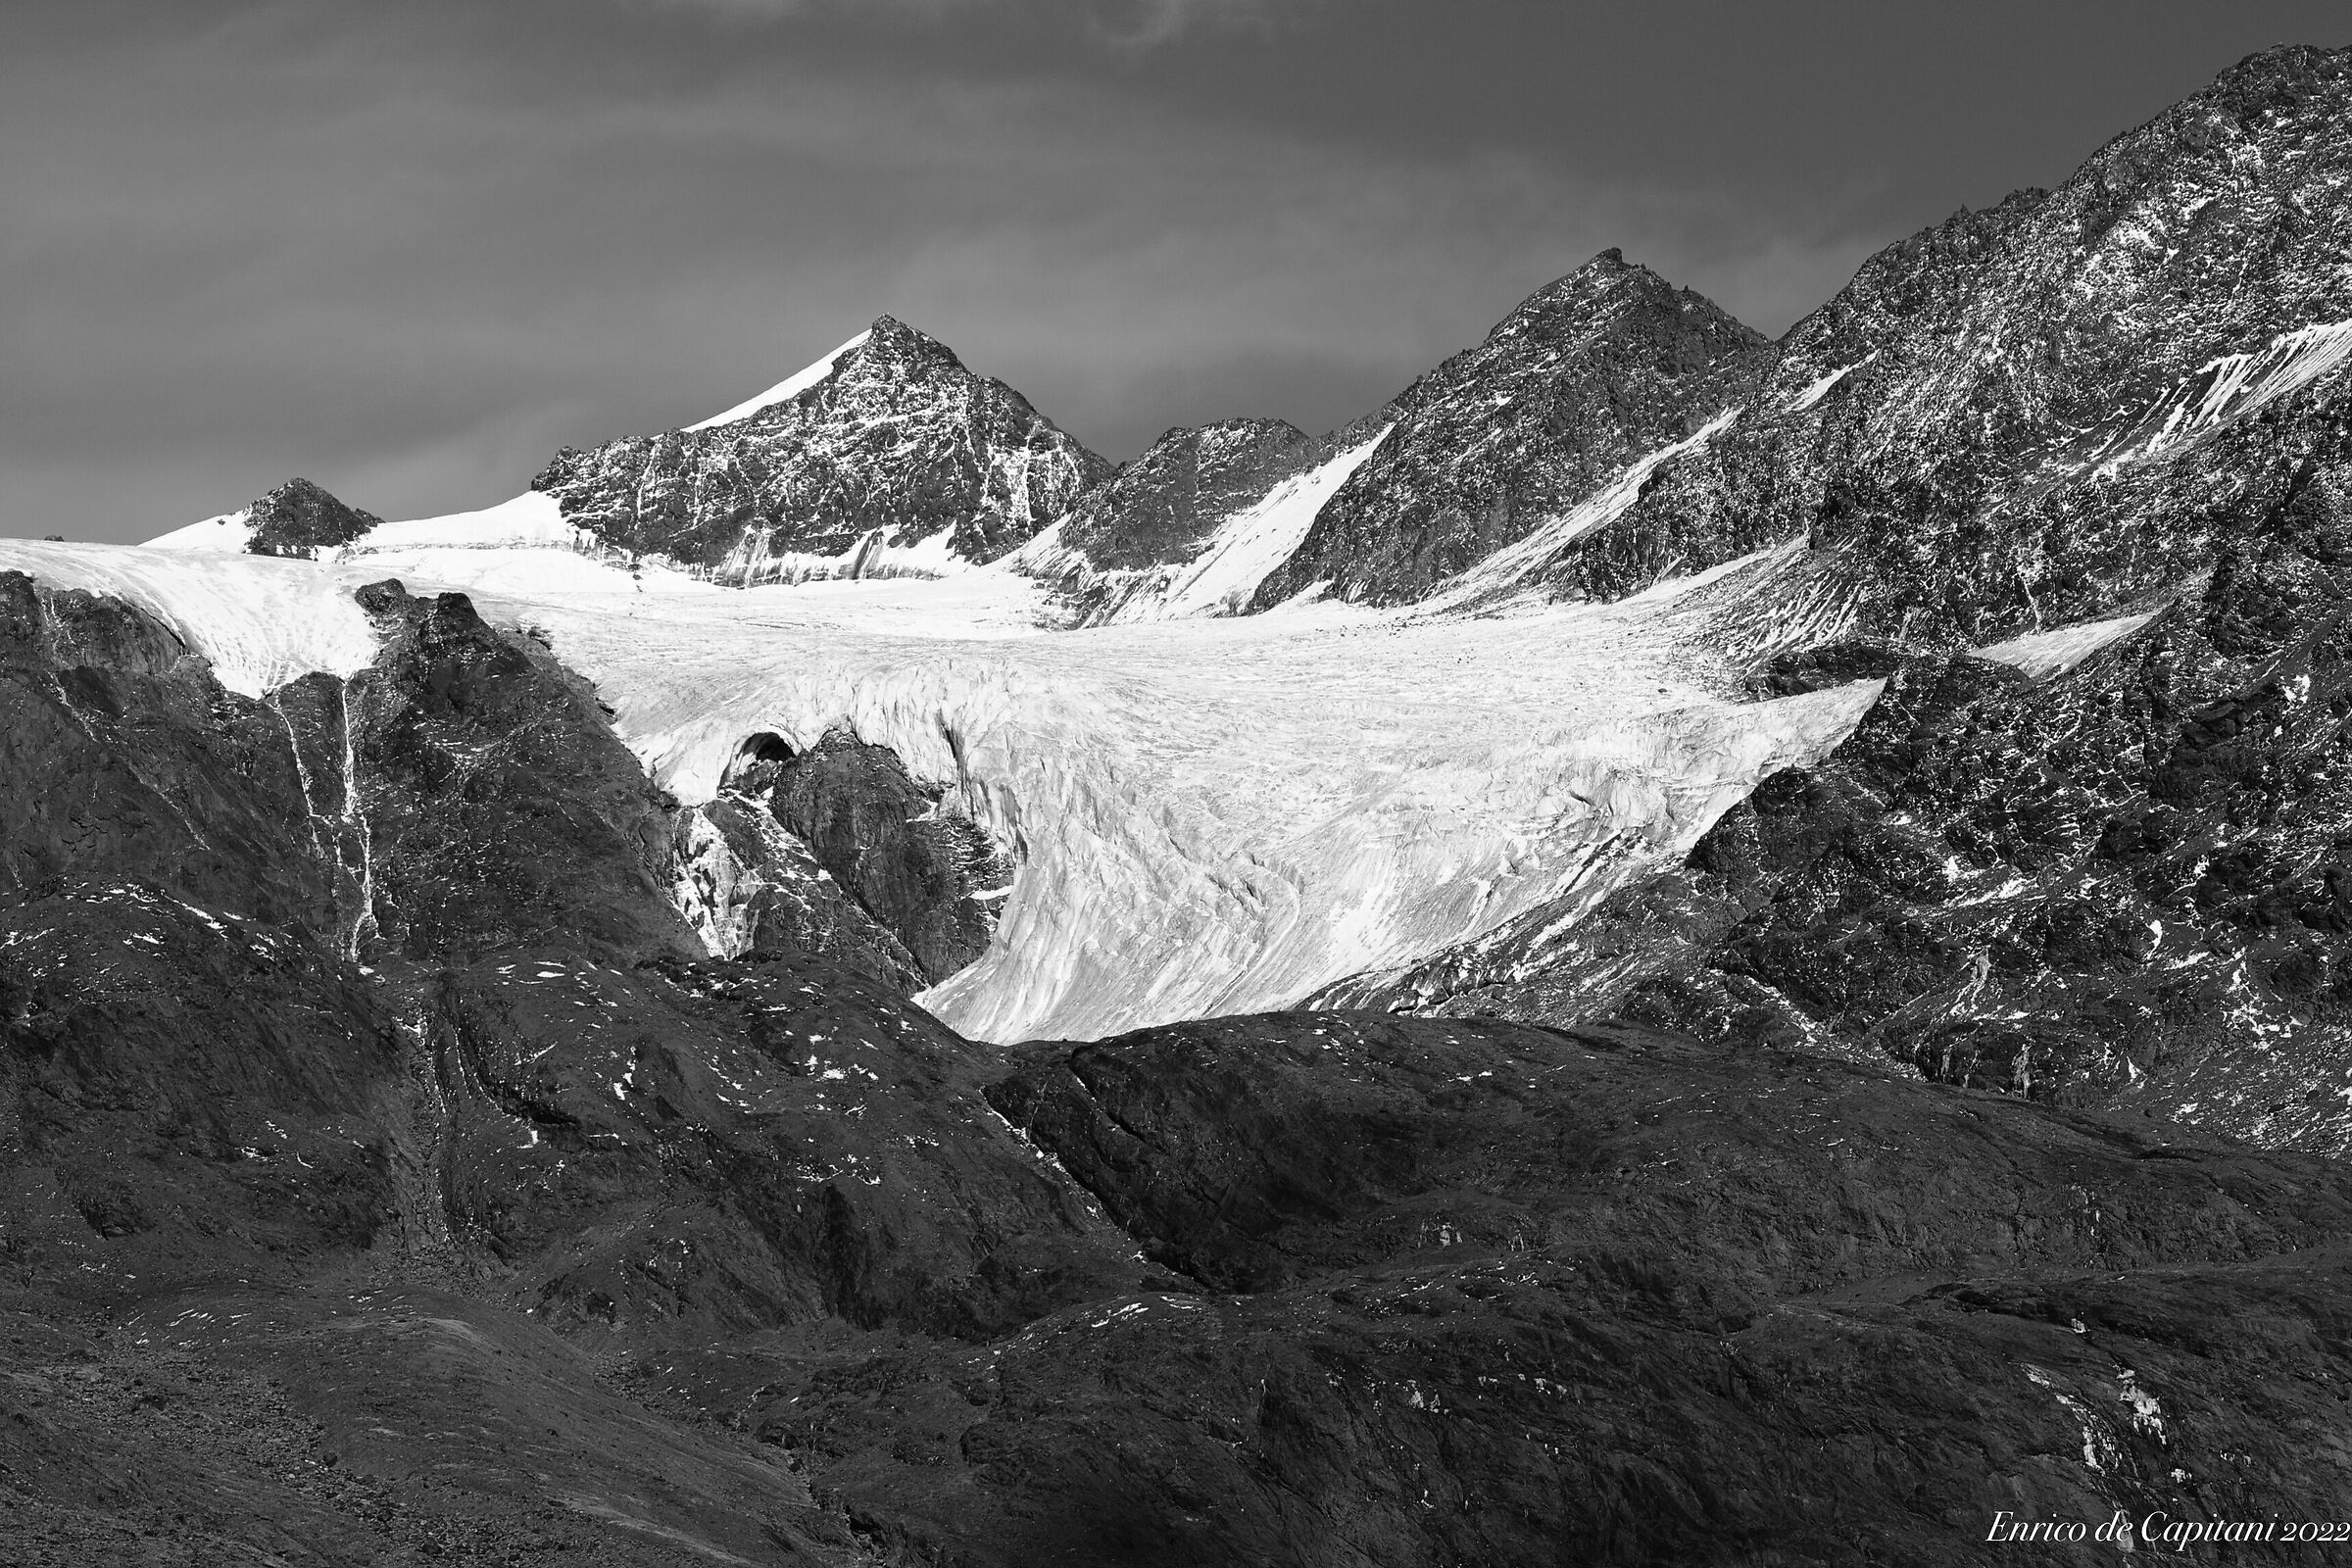 The Dosegù glacier ...